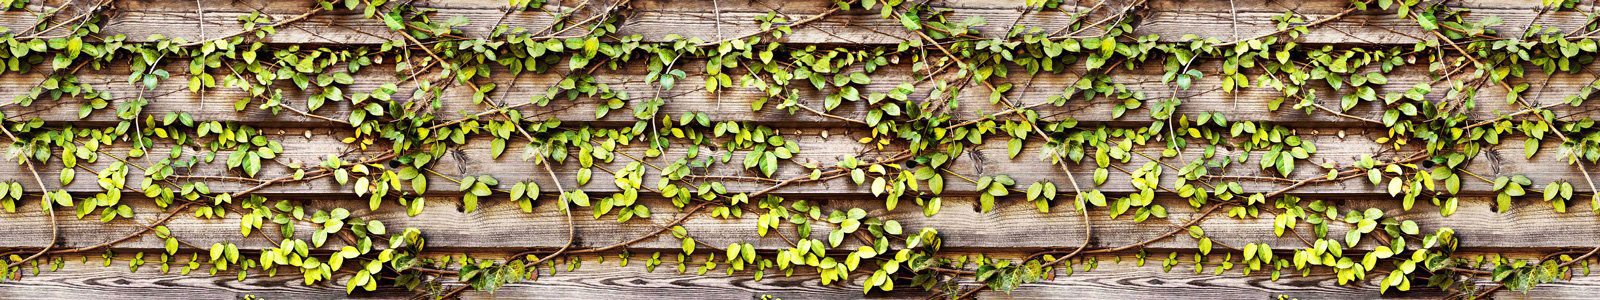 №6346 - Деревянная стена в плетущемся растении